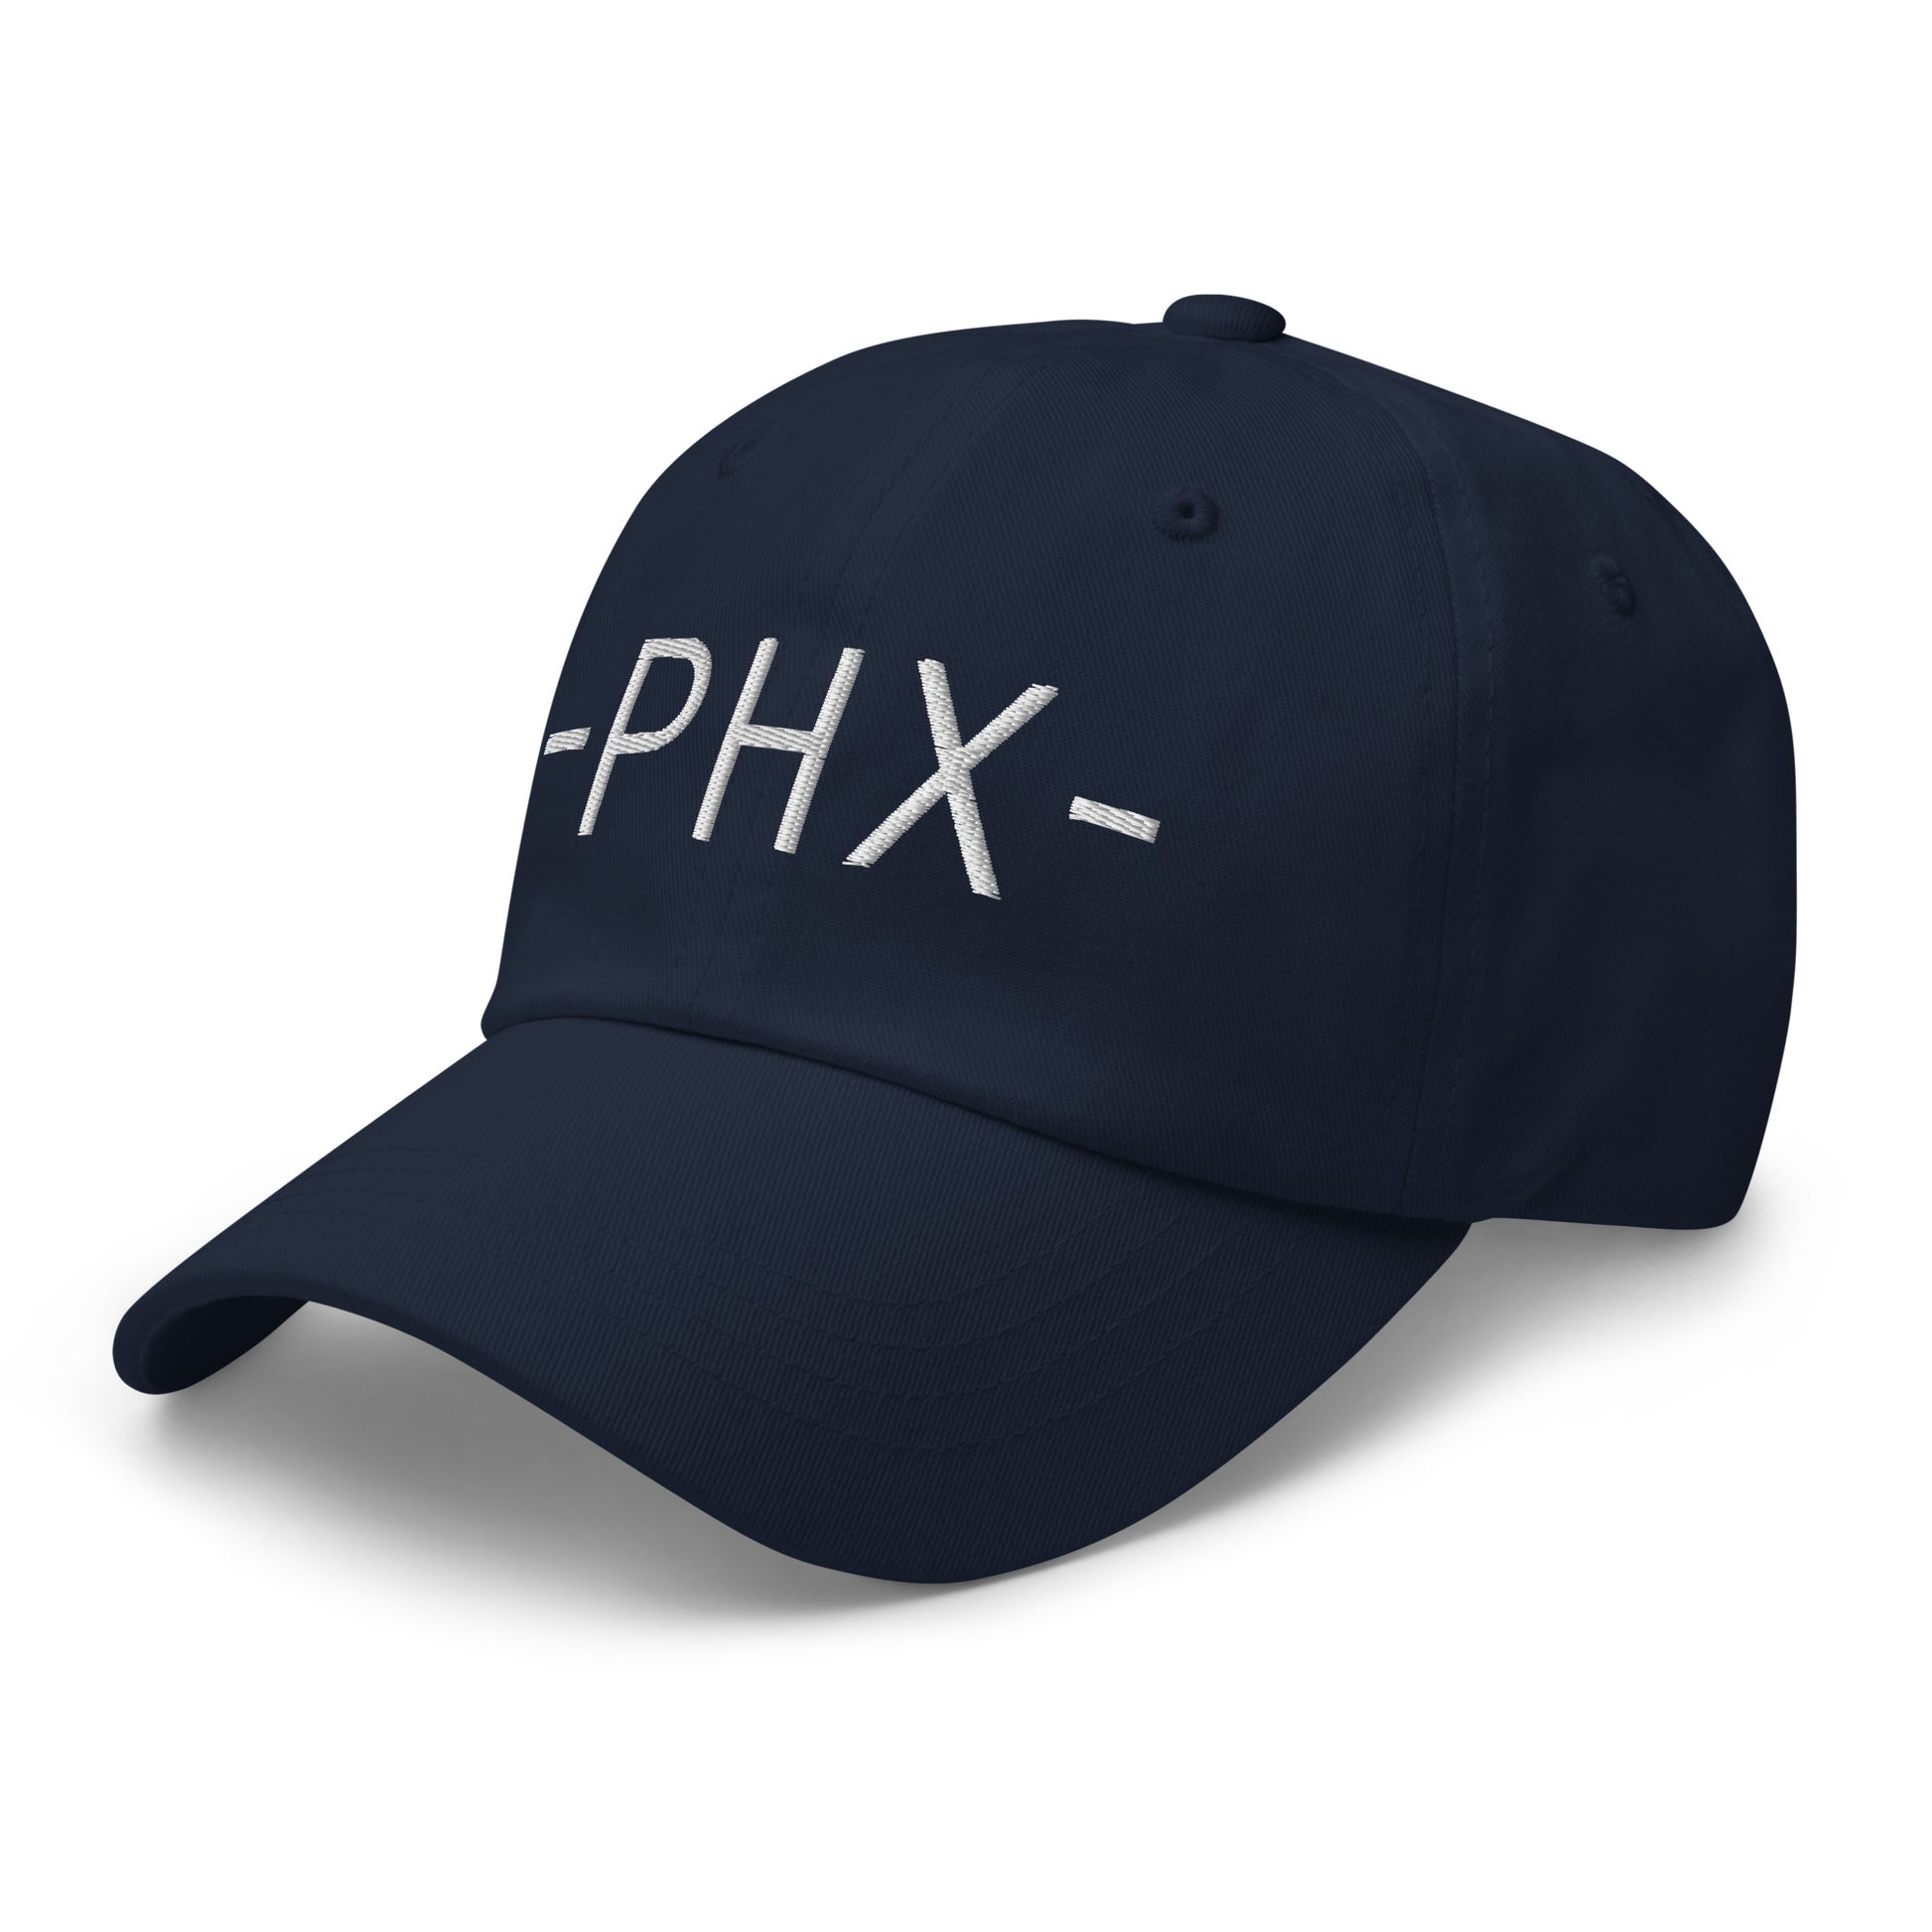 Souvenir Baseball Cap - White • PHX Phoenix • YHM Designs - Image 15